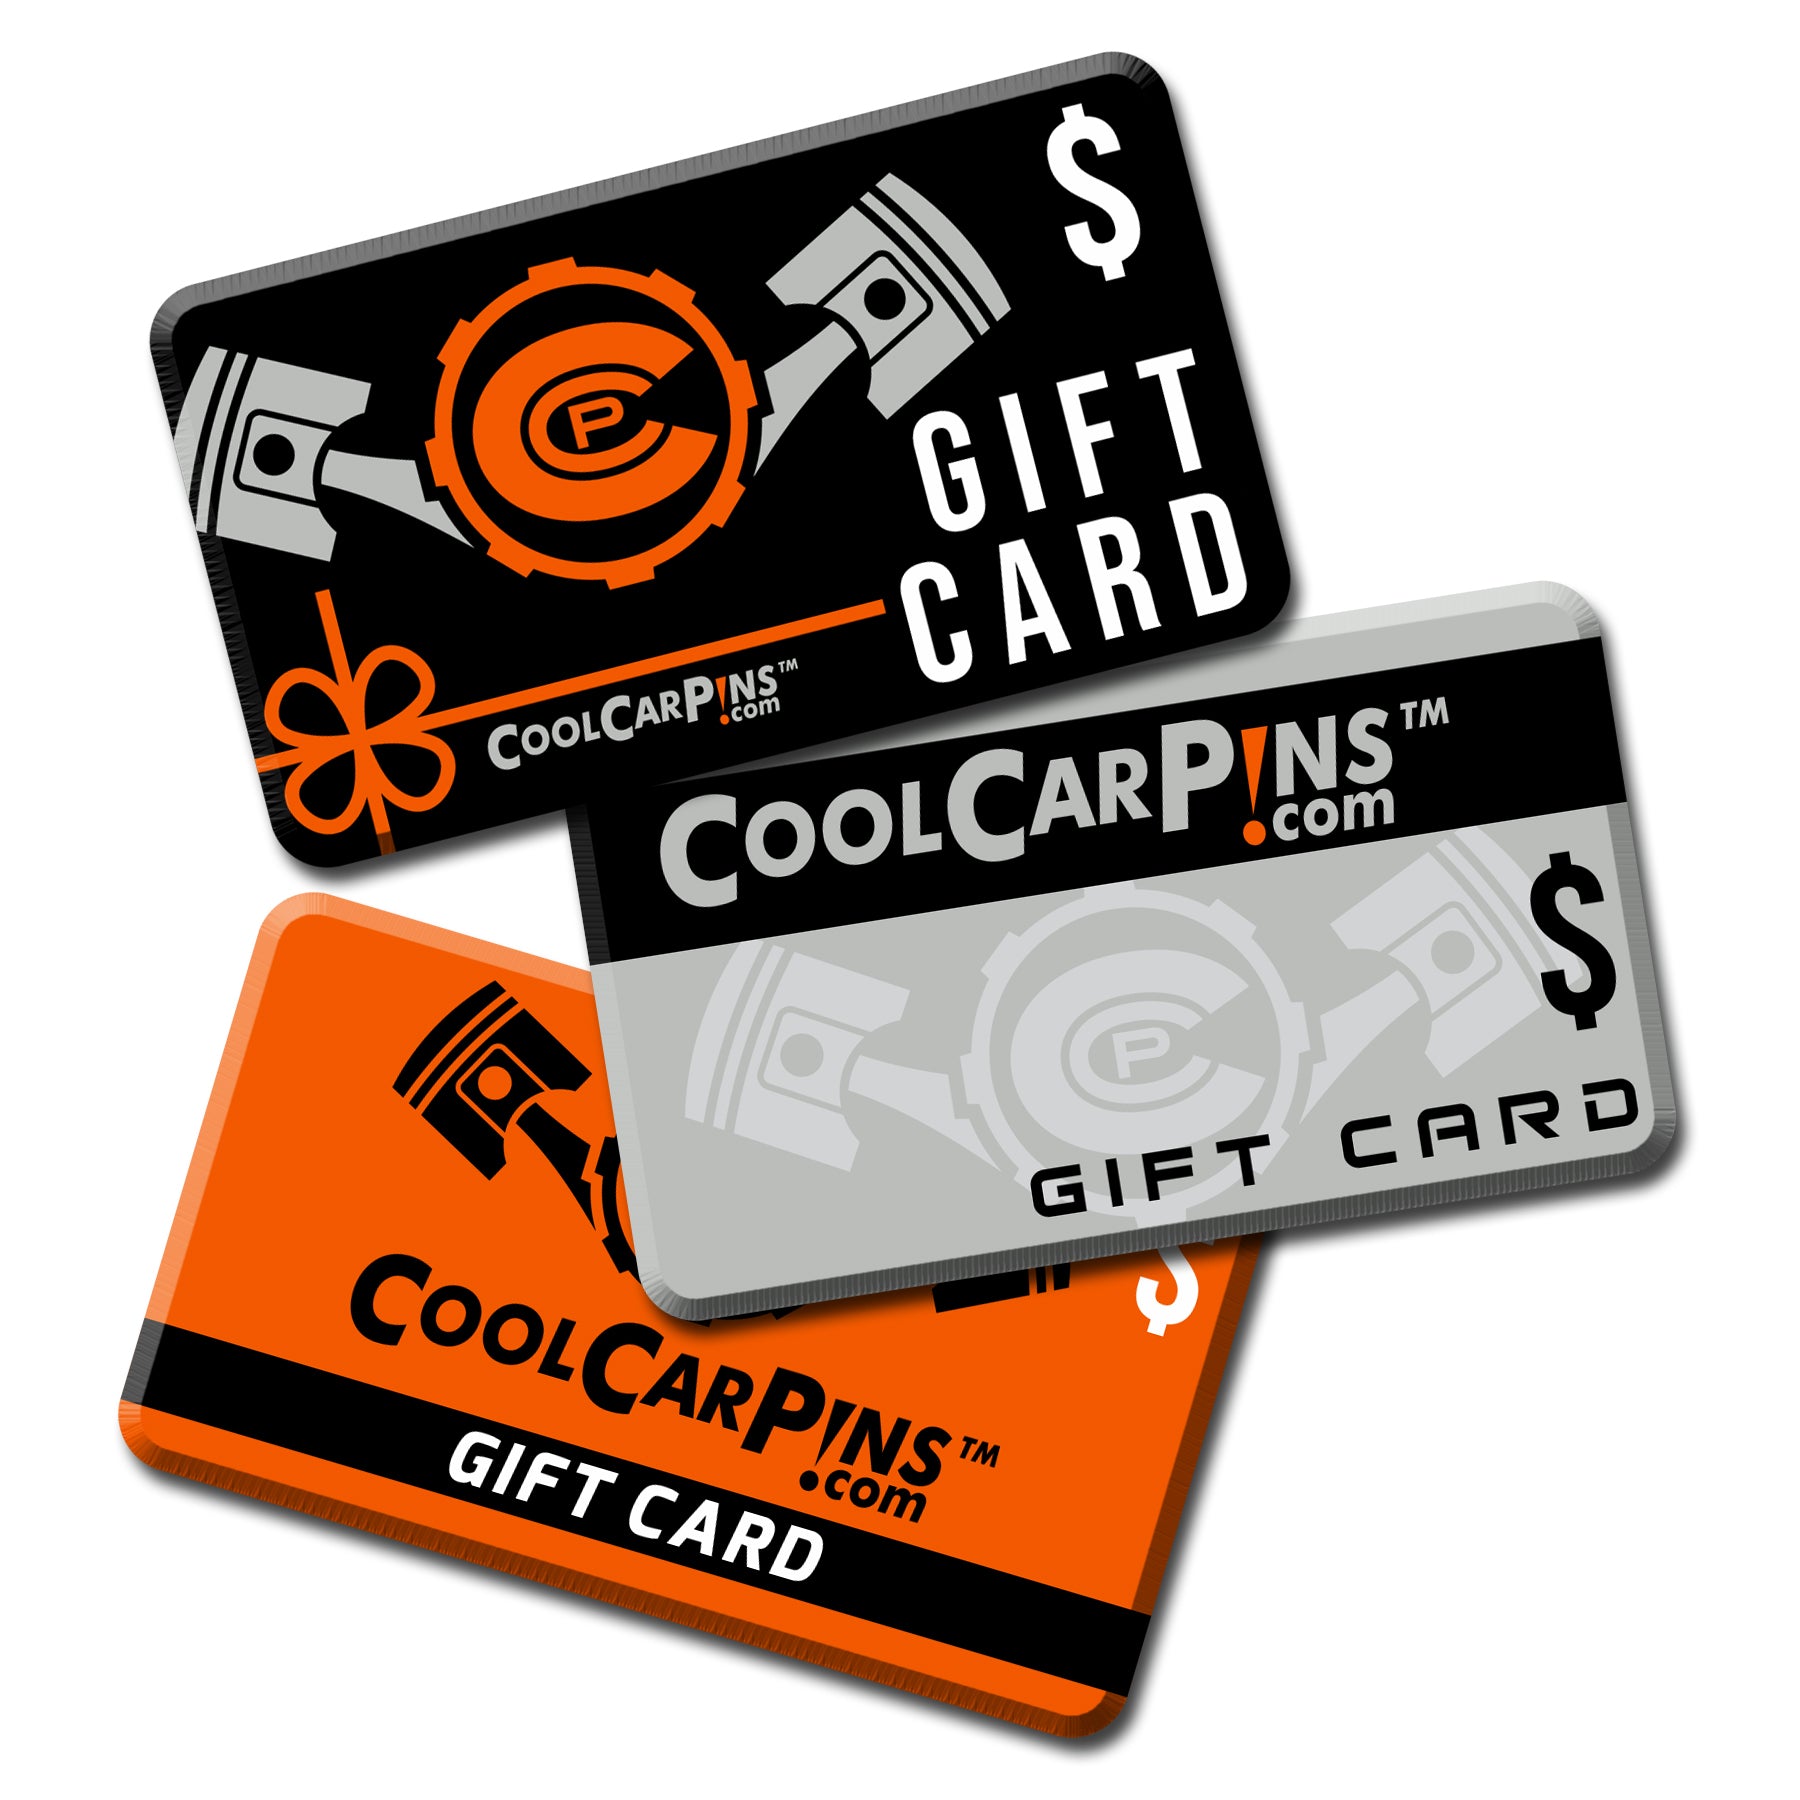 Cool Car Pins™ - Gift Card